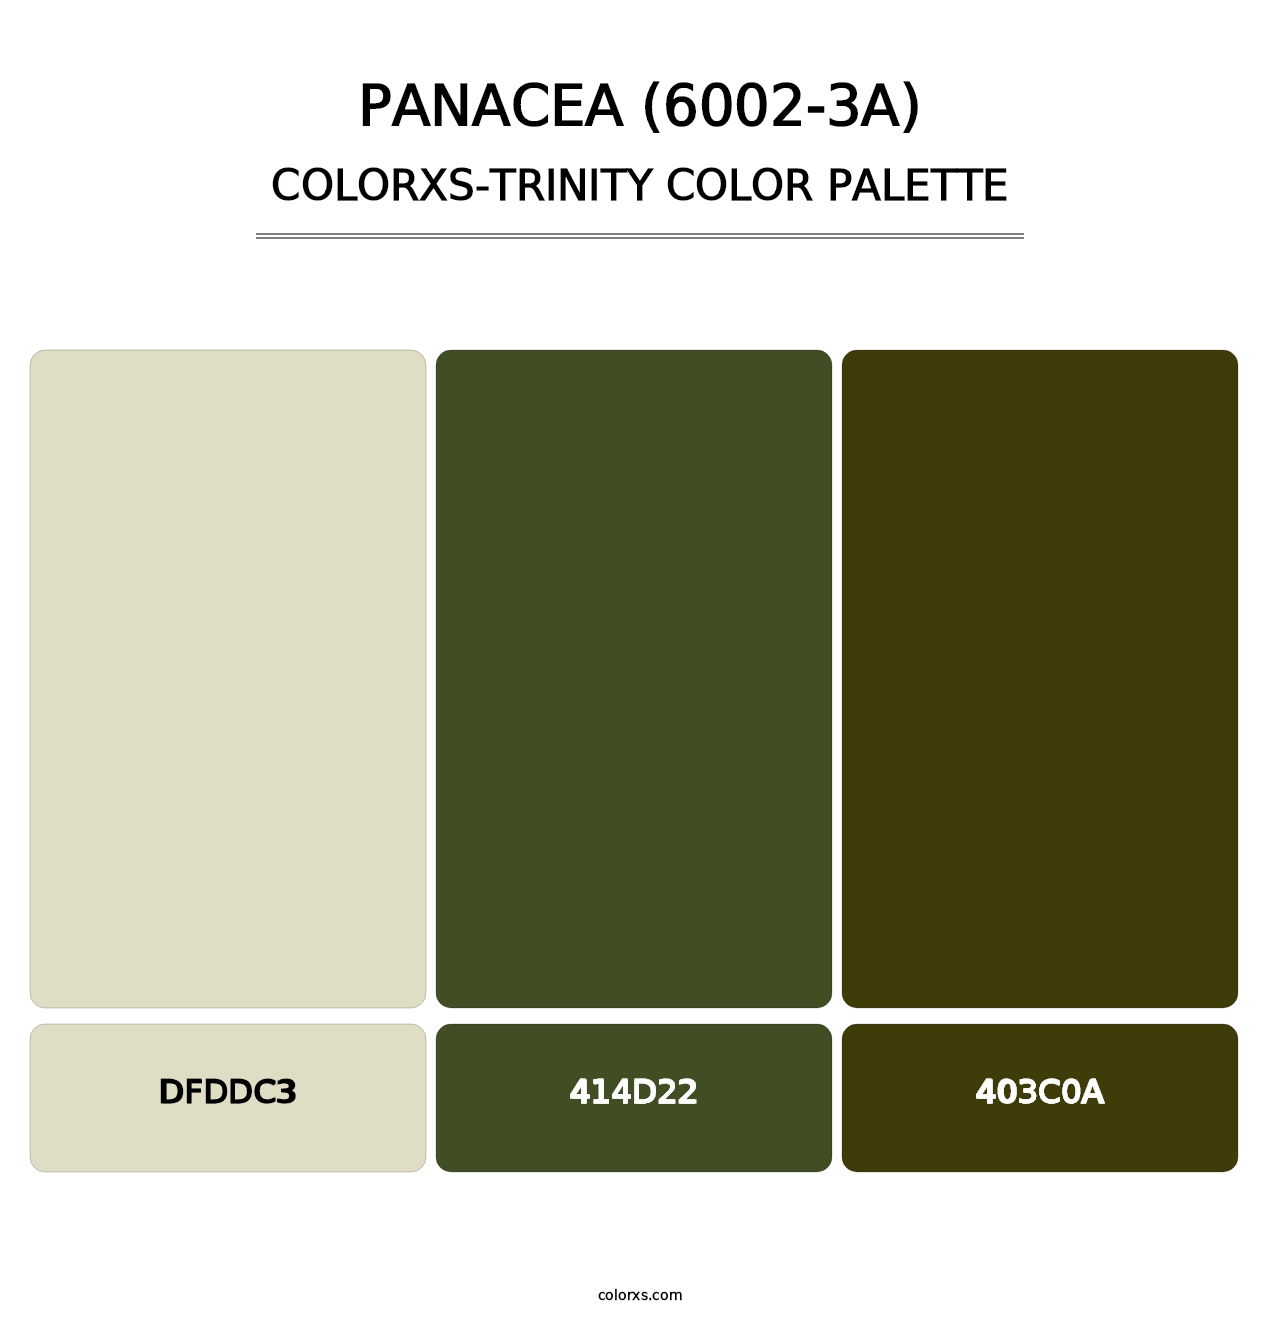 Panacea (6002-3A) - Colorxs Trinity Palette